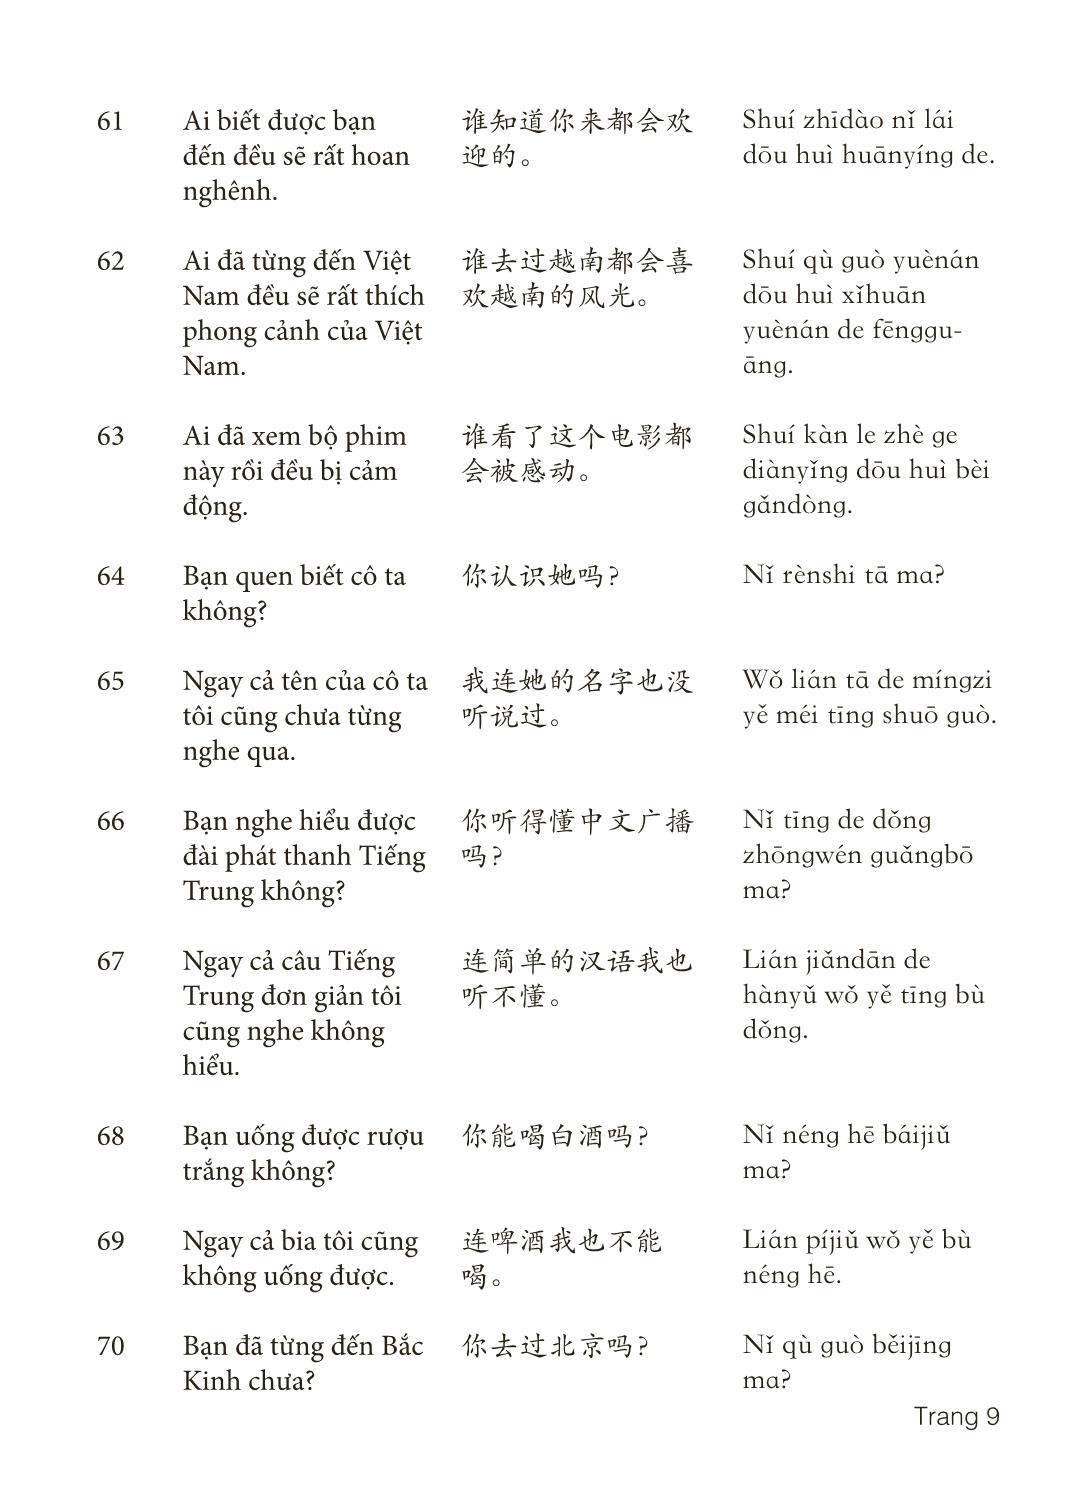 3000 Câu đàm thoại tiếng Hoa - Phần 29 trang 9